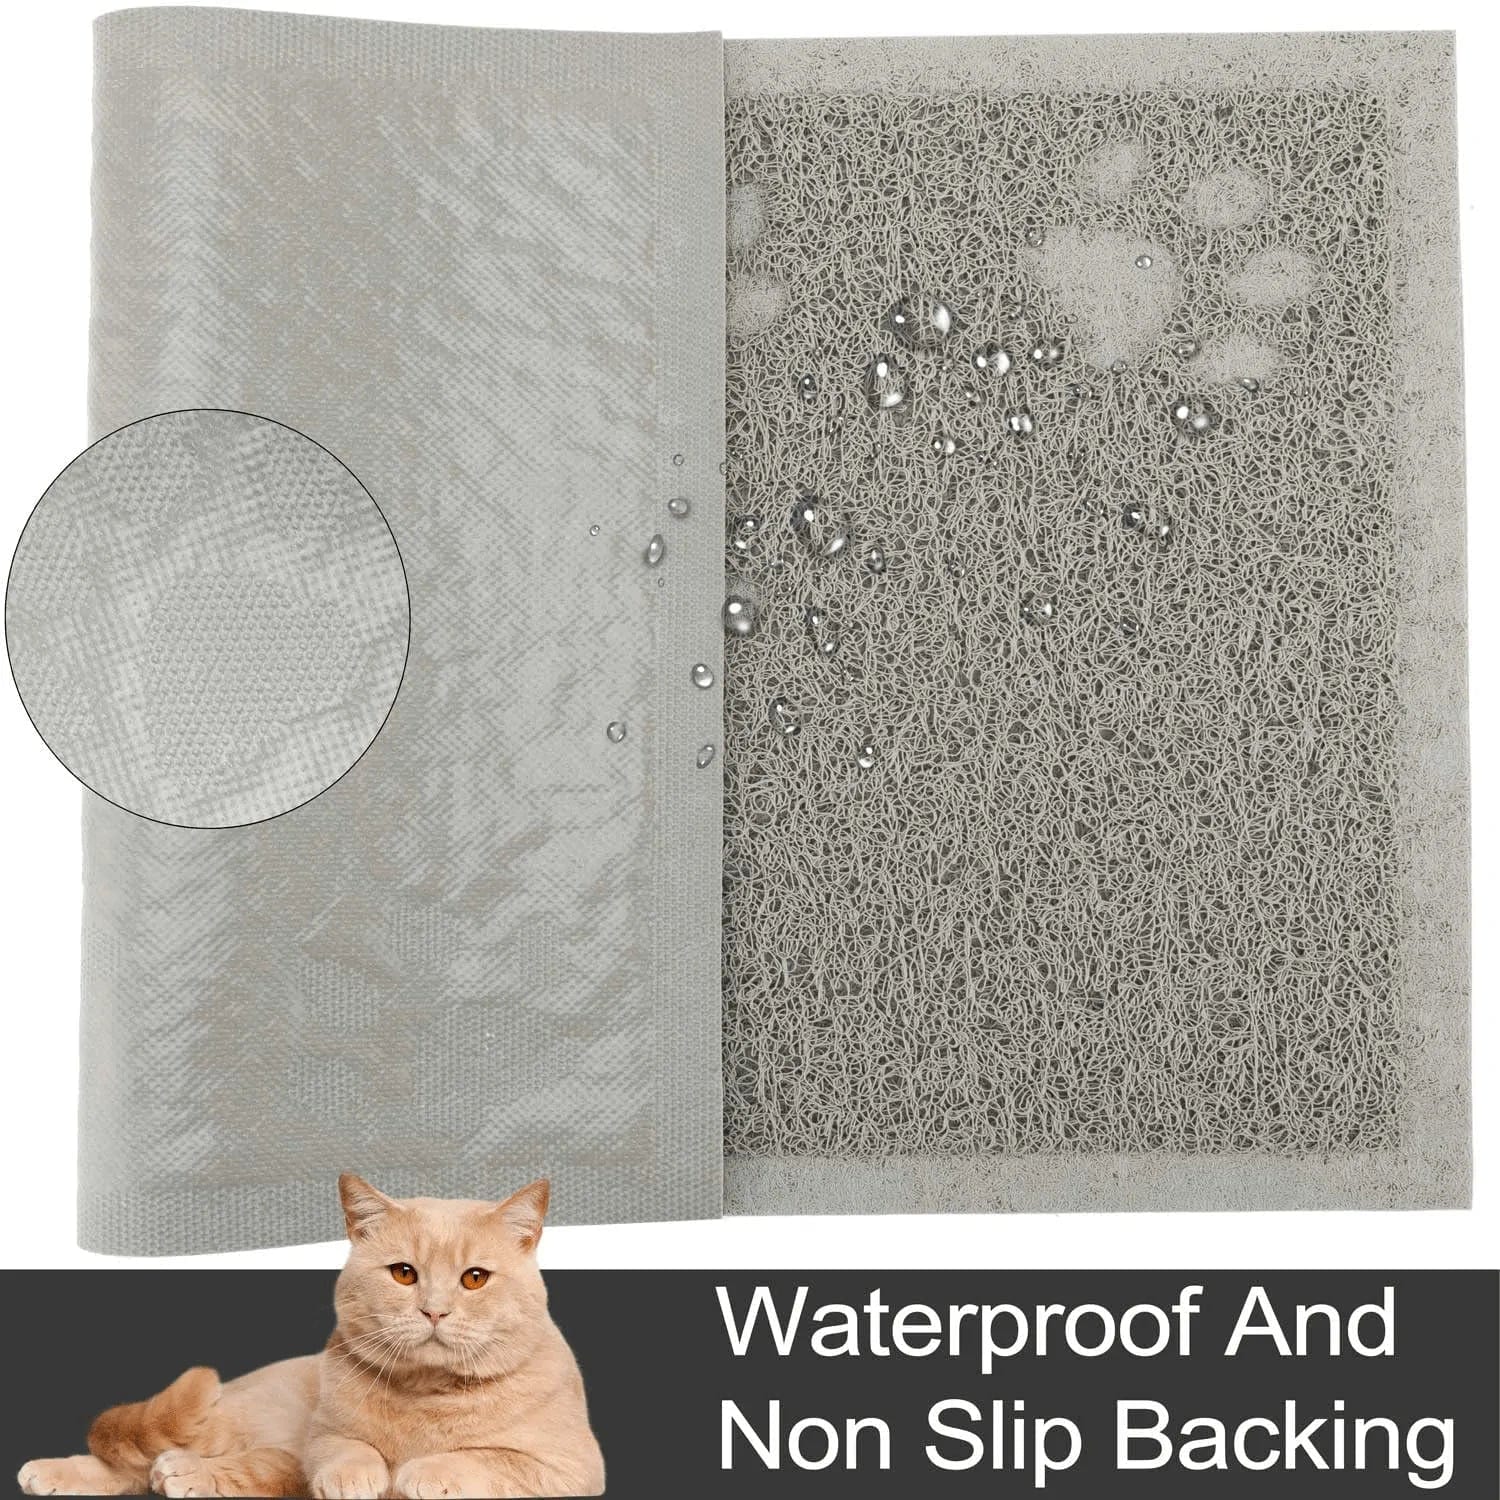 URDOGSL Cat Litter Mat, Premium Durable Cat Litter Trapping Mat for Li –  KOL PET